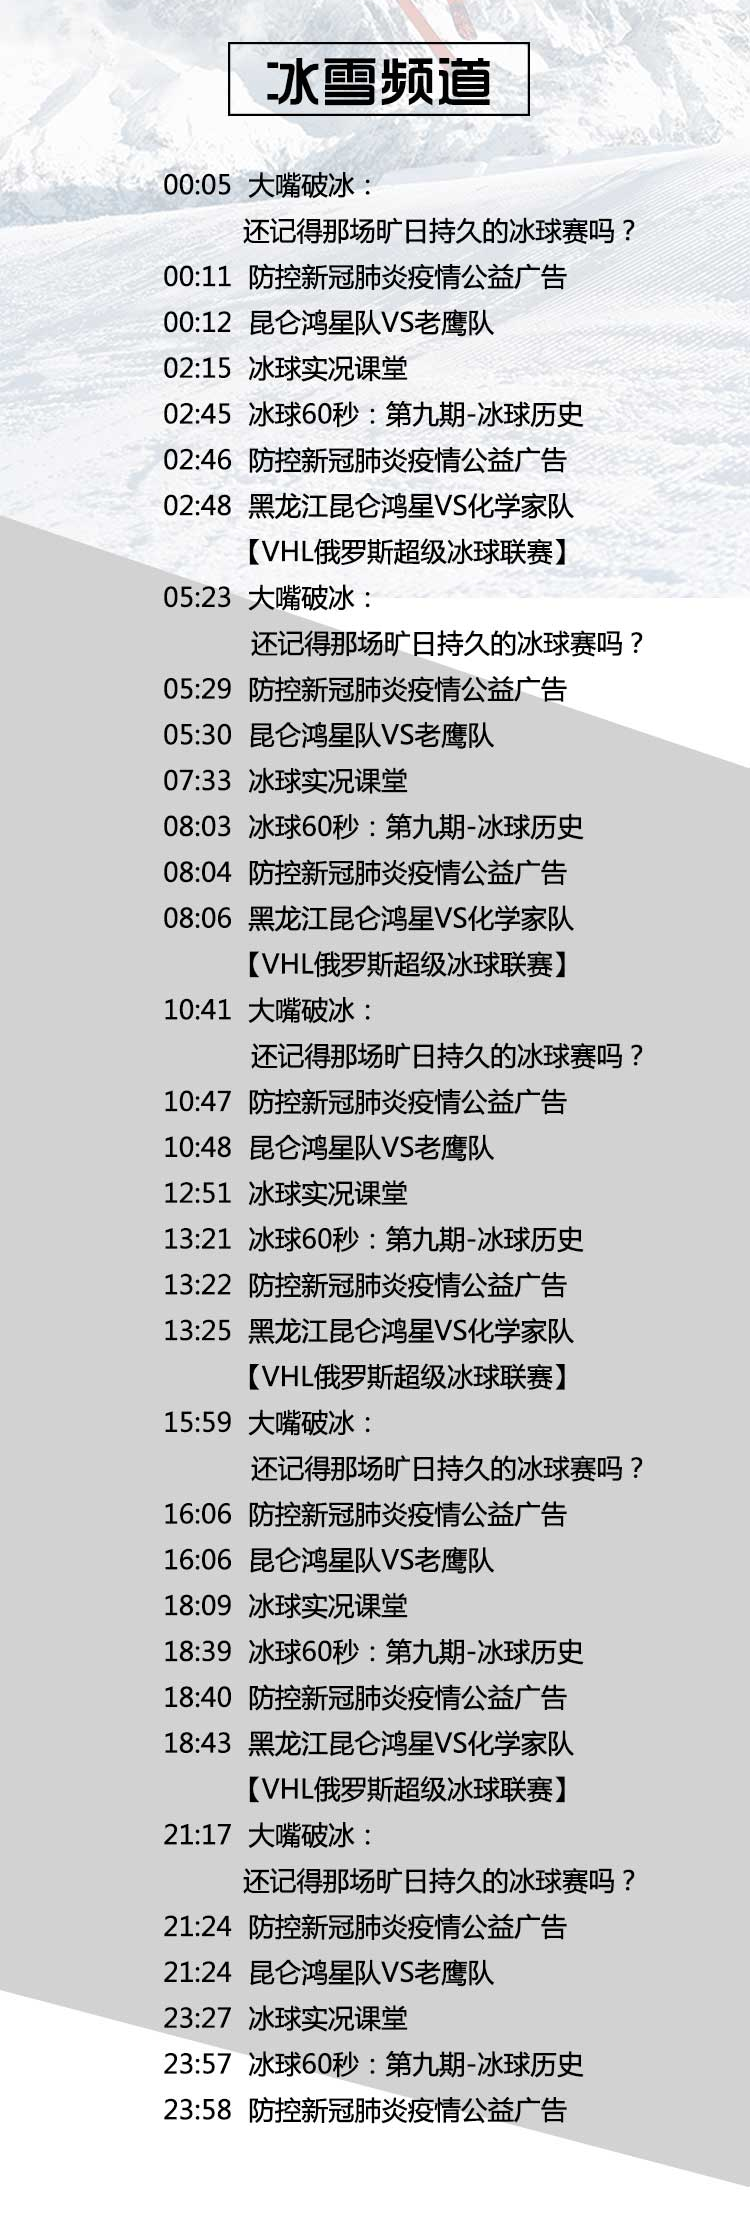 广东电视台体育频道节目表的简单介绍